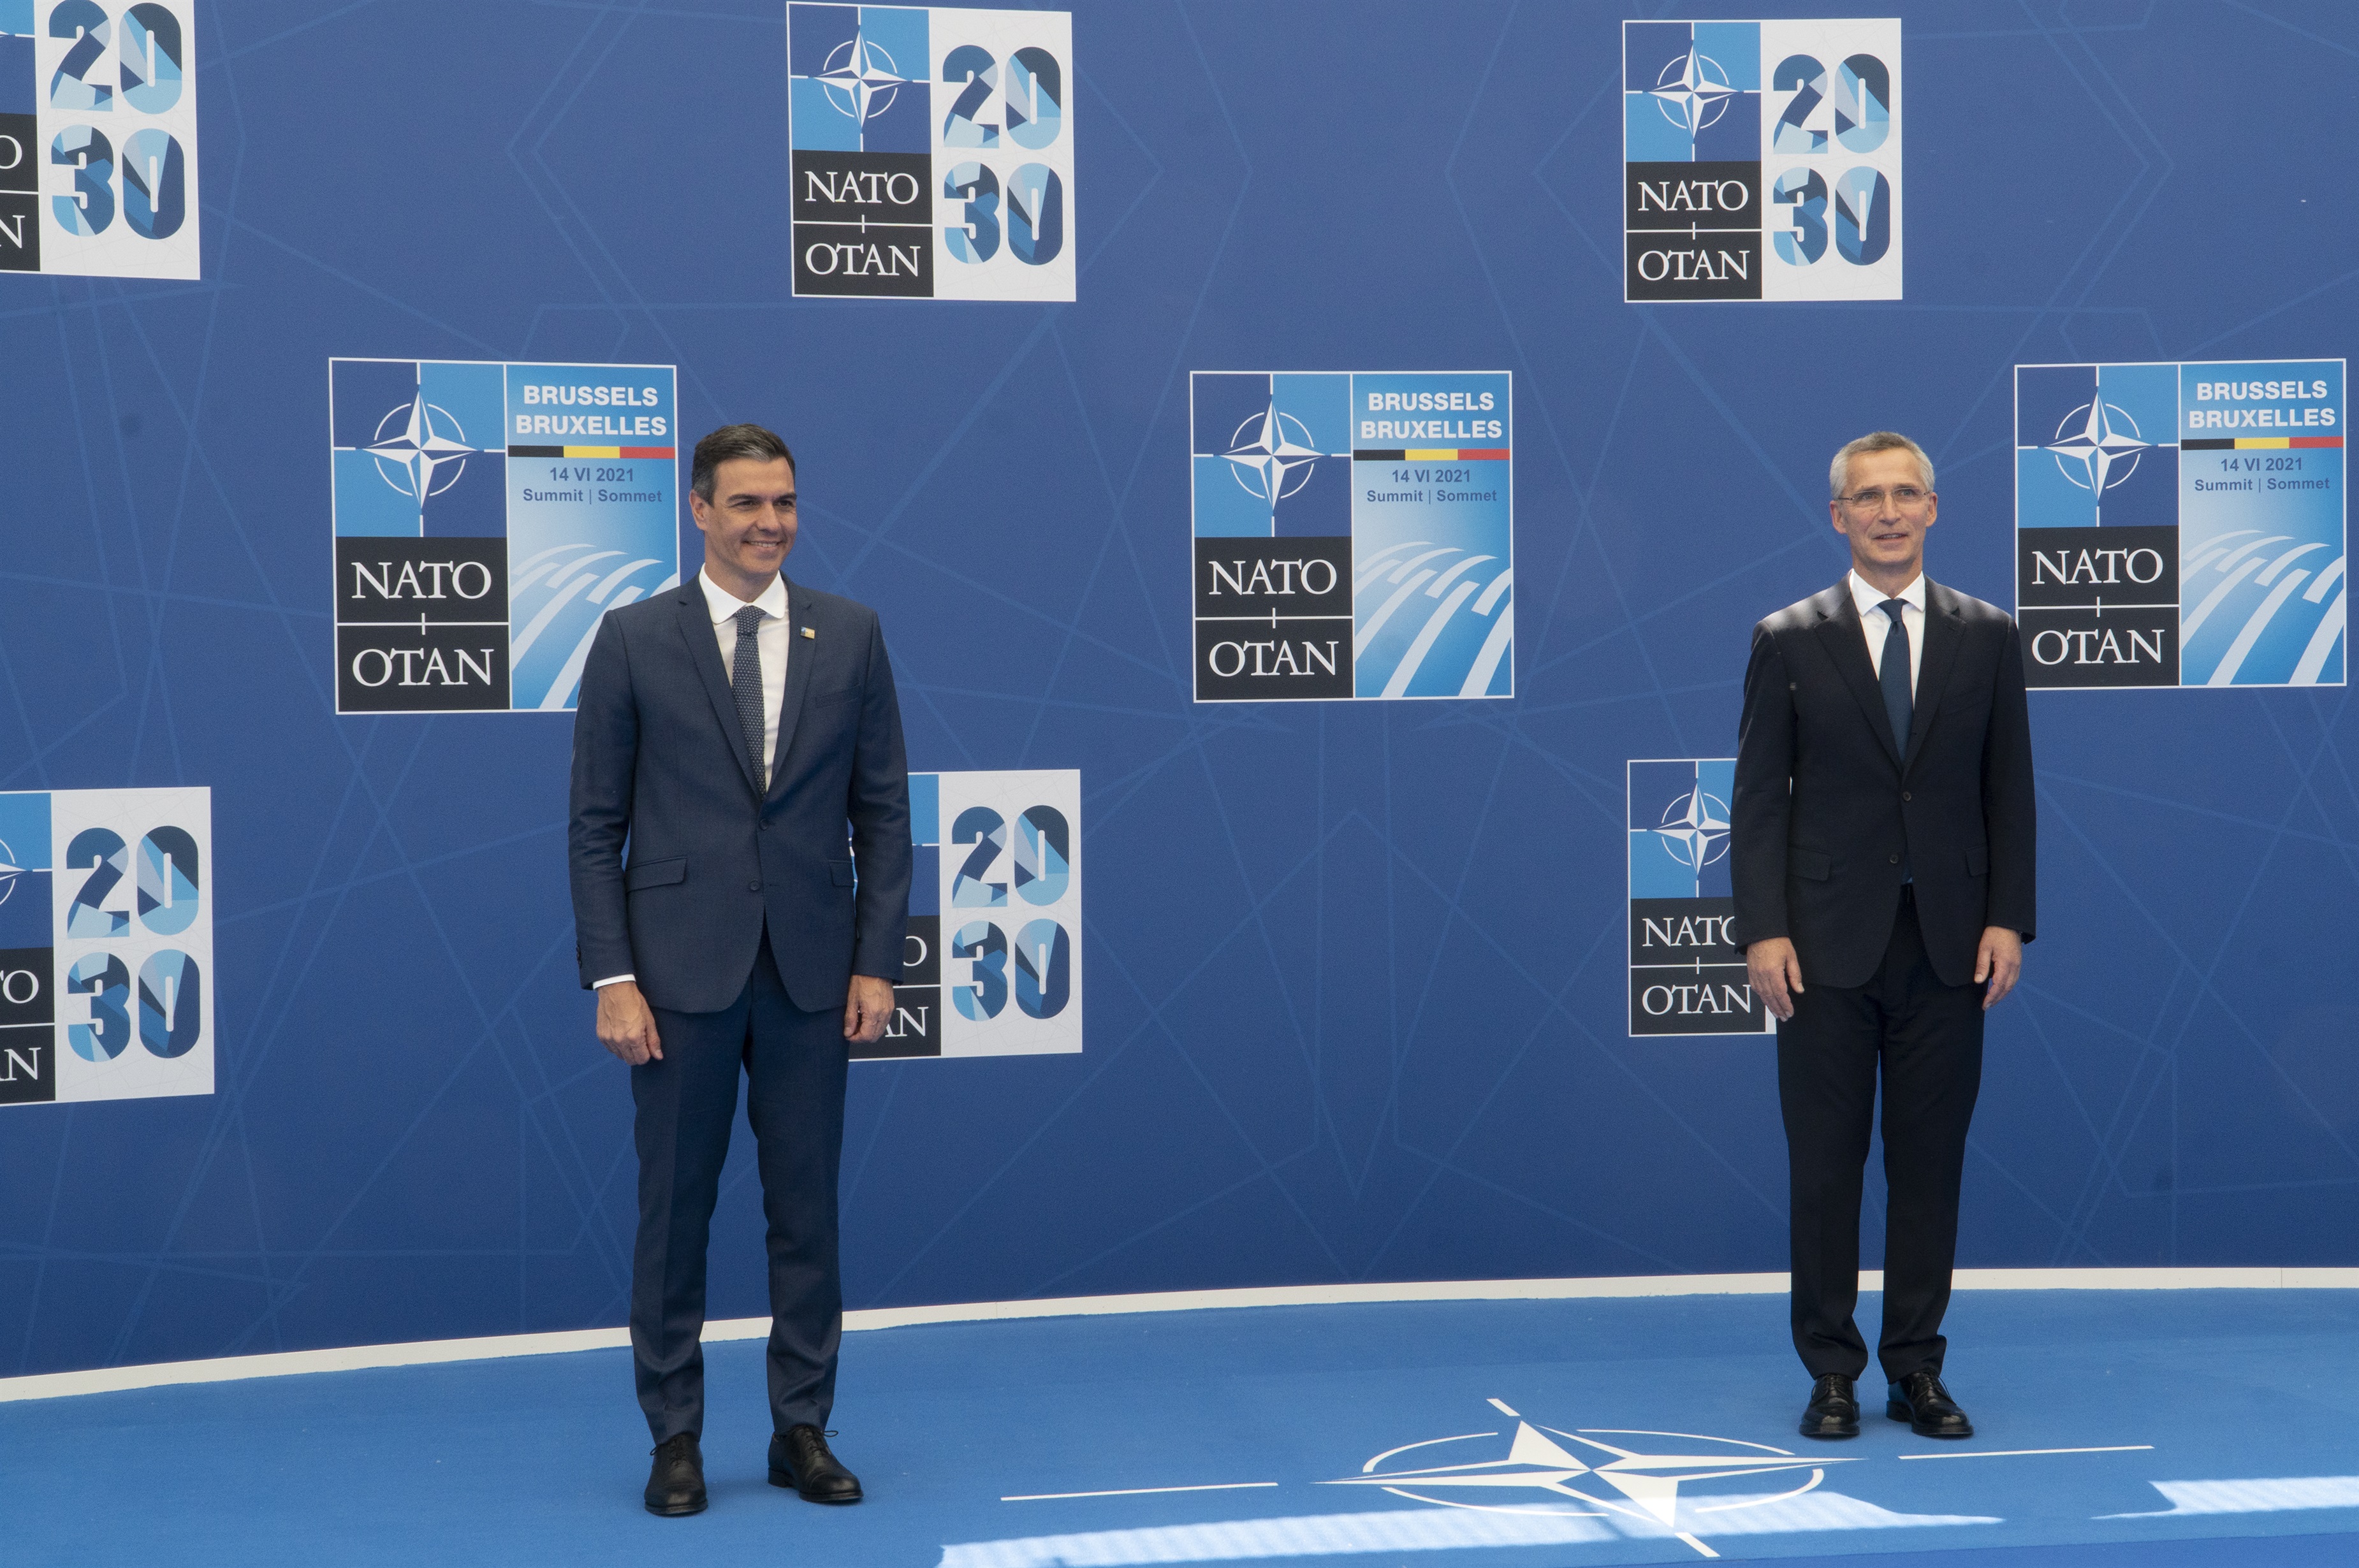 El presidente del Gobierno de España, Pedro Sánchez, y el secretario general de la OTAN, Jens Stoltenberg, coincidieron esta mañana en destacar que lo resuelto en esta Cumbre definirá la estrategia común de la próxima década. 